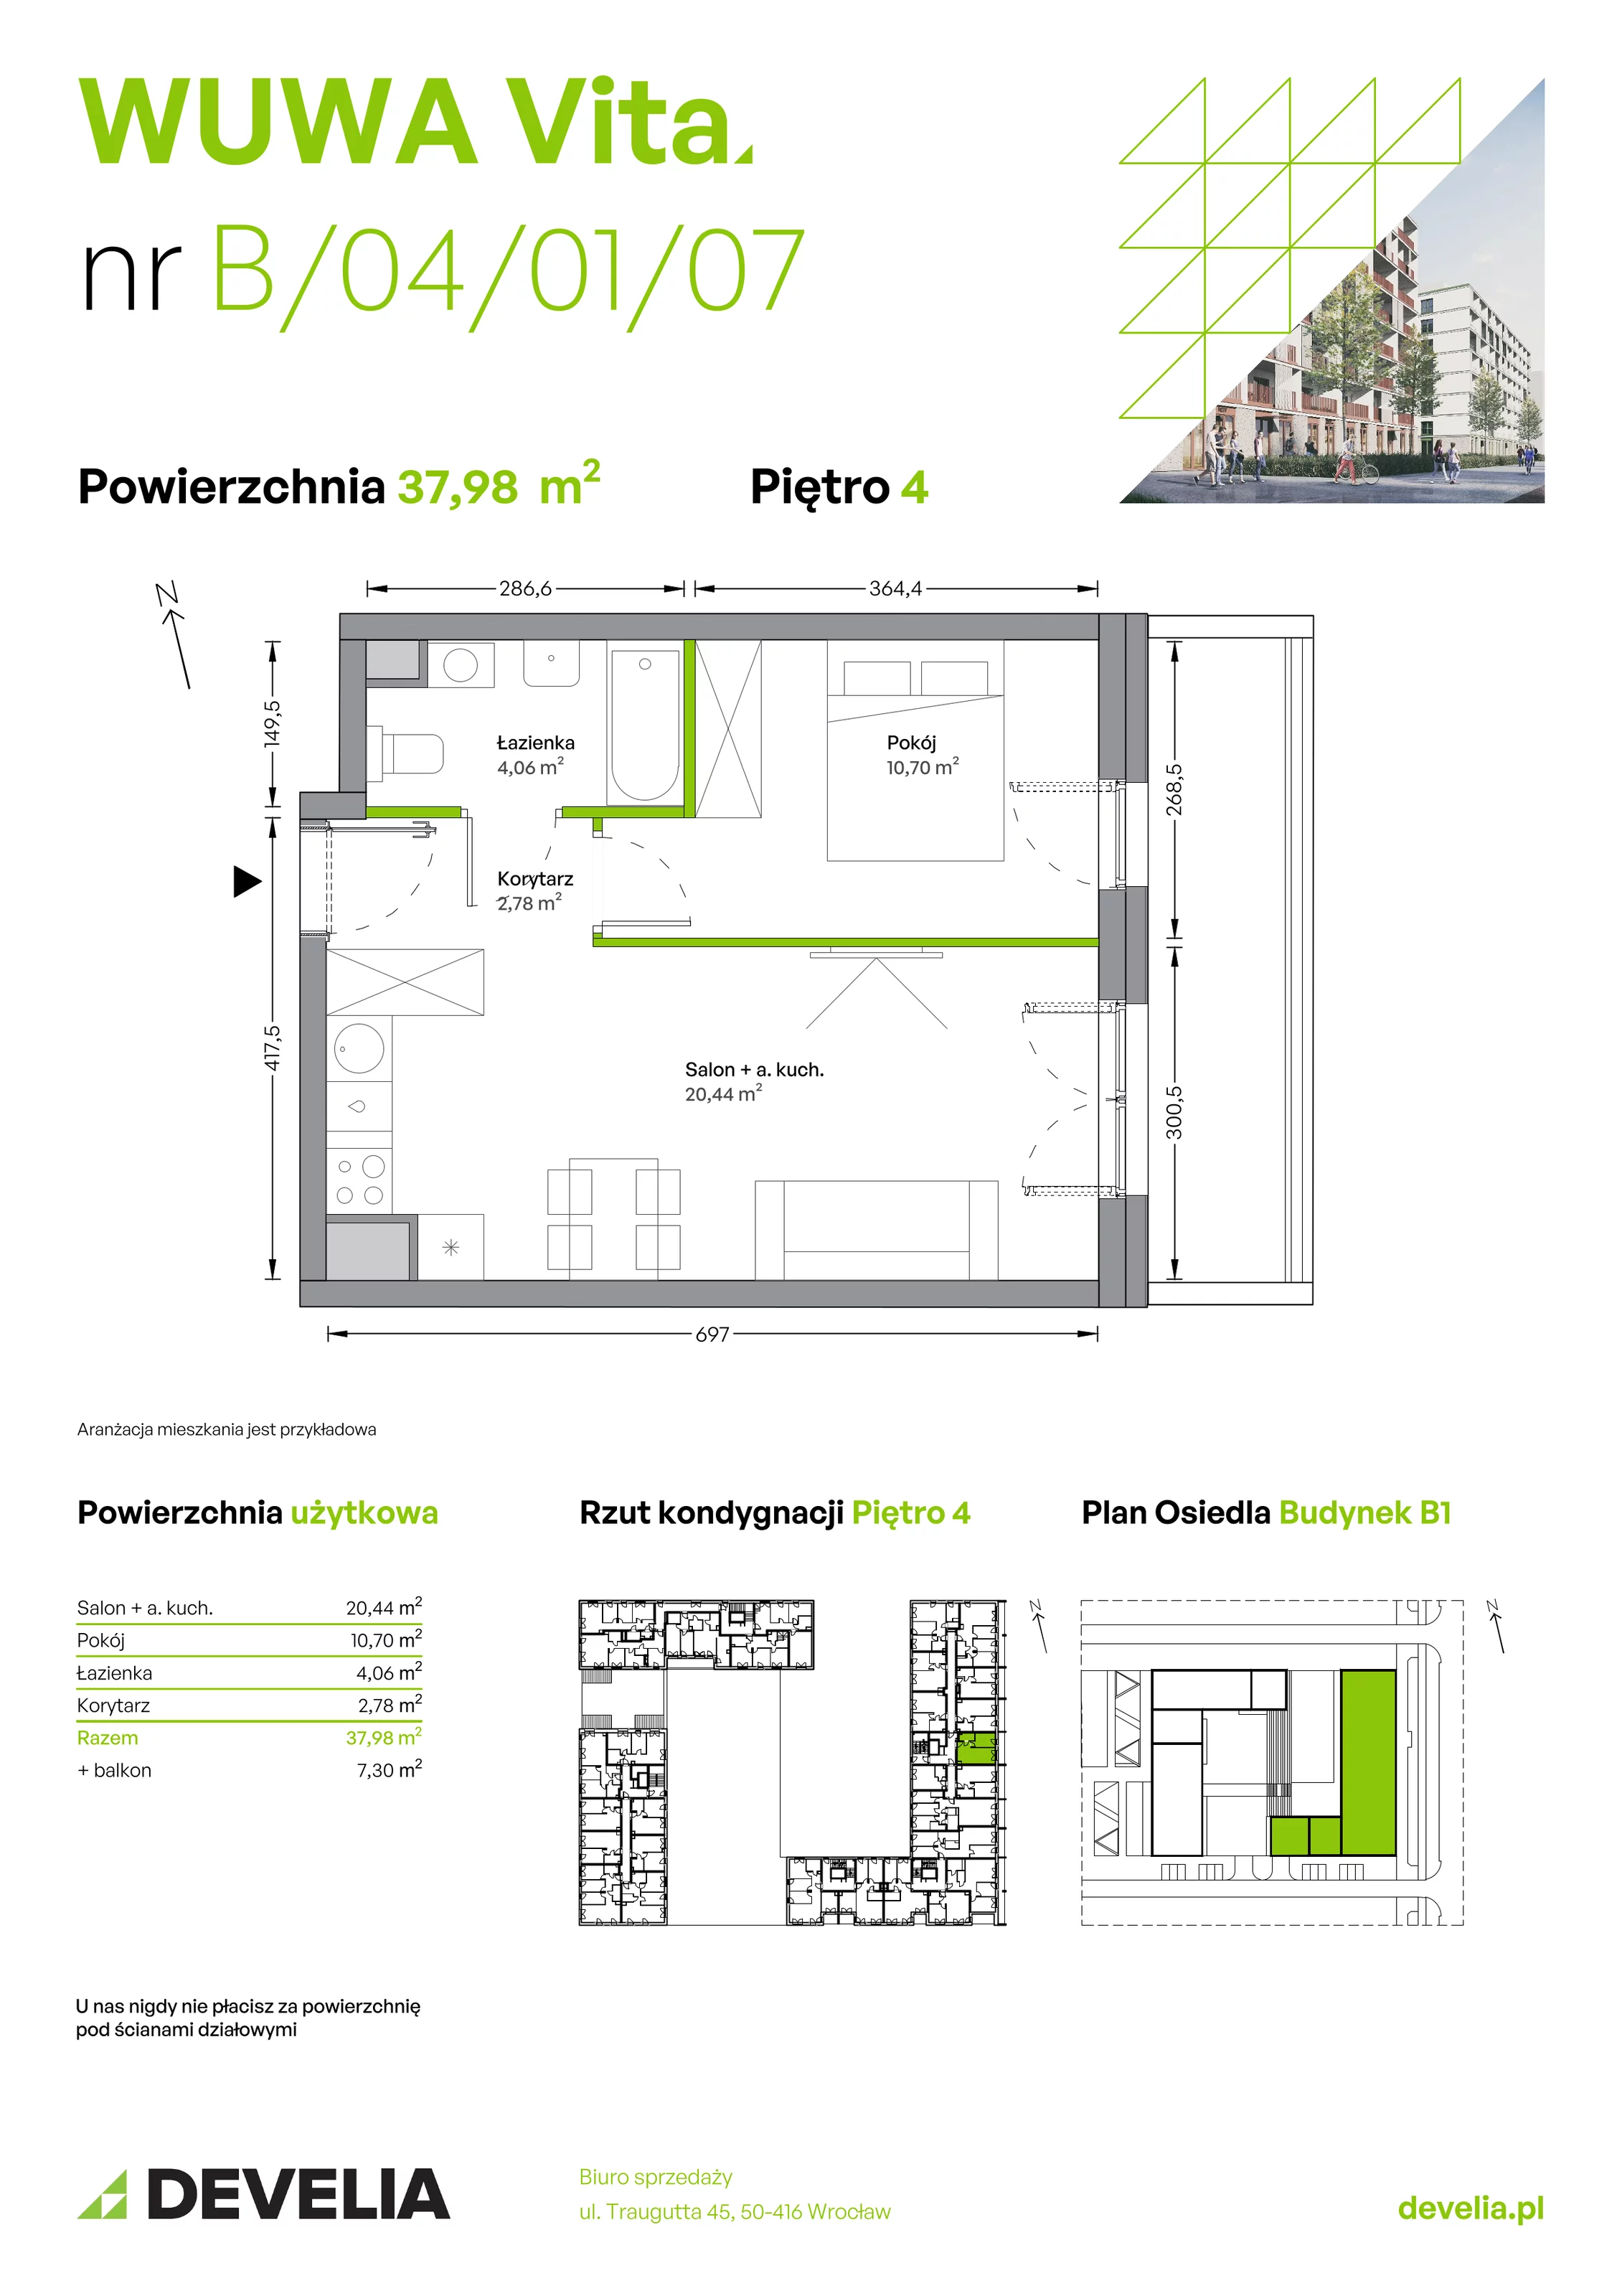 Mieszkanie 37,98 m², piętro 4, oferta nr B.04.01.07, WUWA Vita, Wrocław, Żerniki, Fabryczna, ul. Tadeusza Brzozy